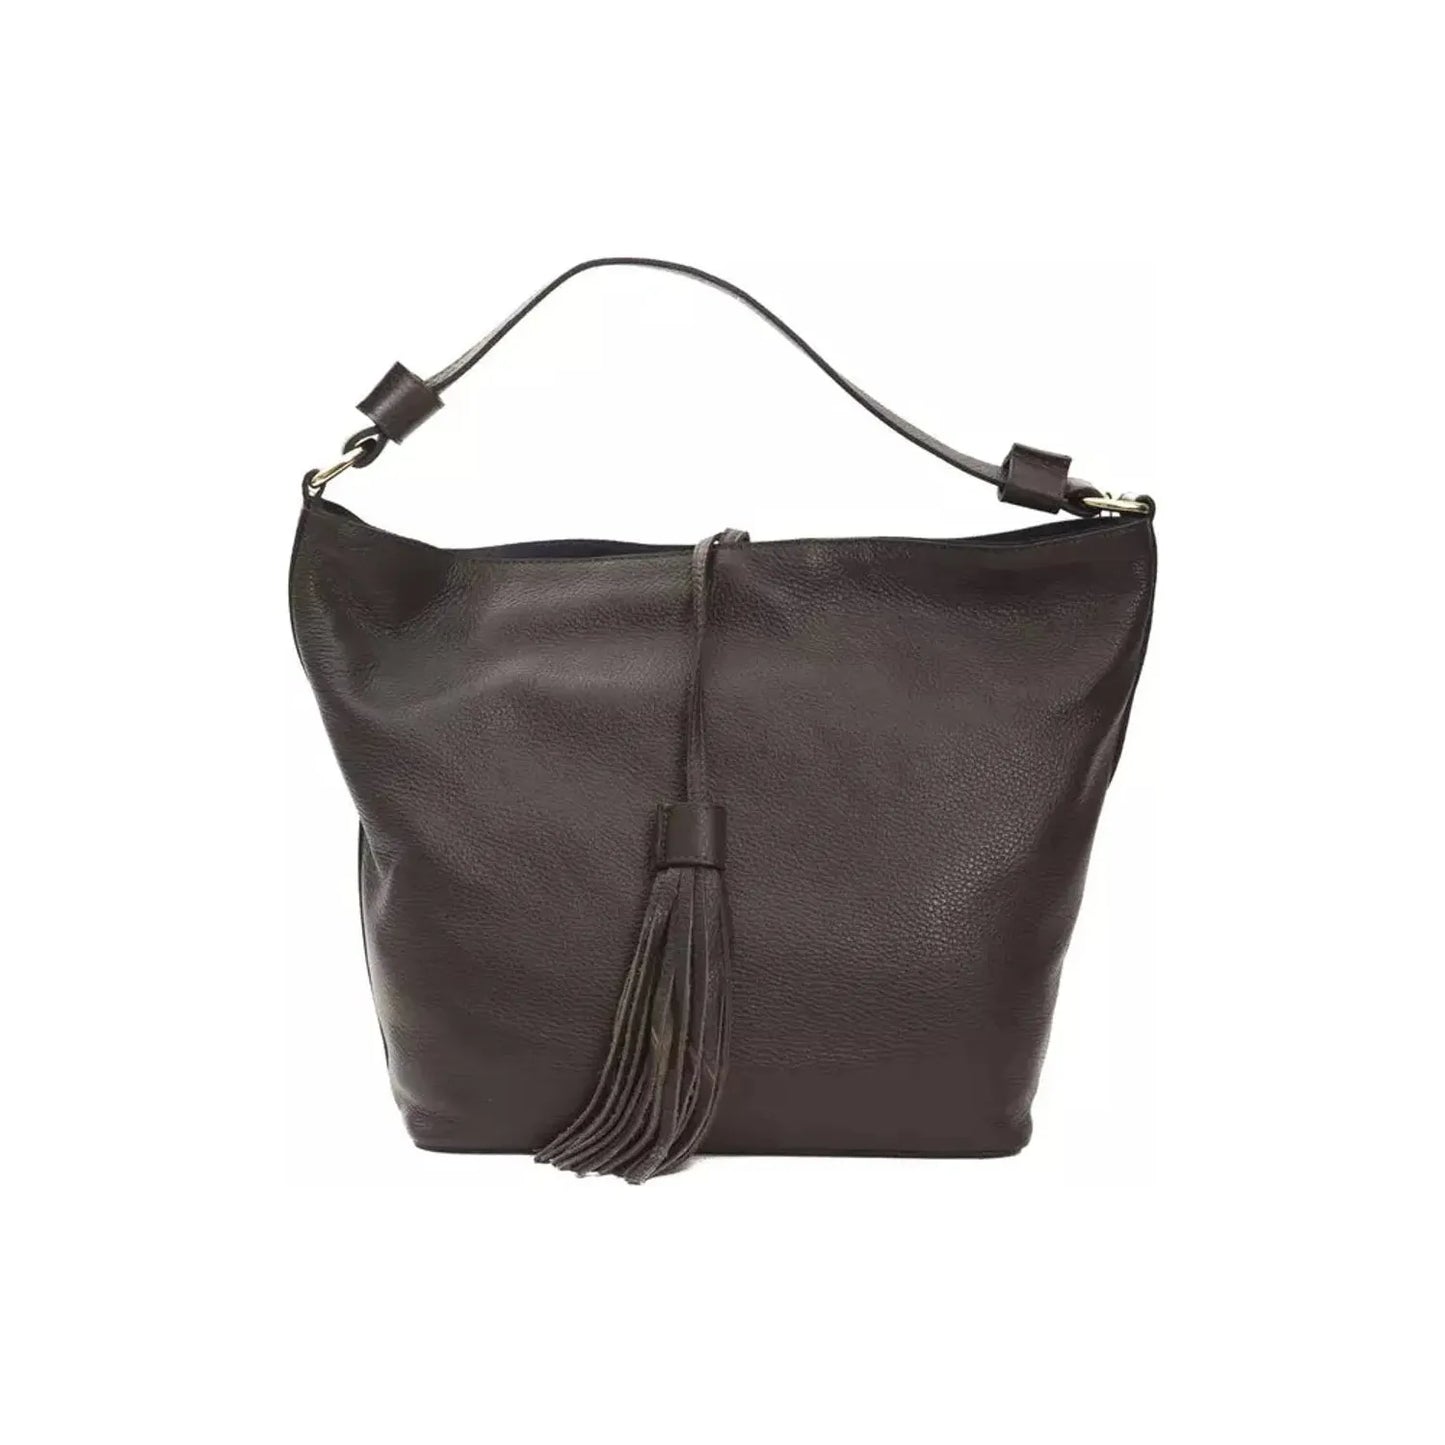 Pompei DonatellaElegant Leather Shoulder Bag in Earthy BrownMcRichard Designer Brands£159.00